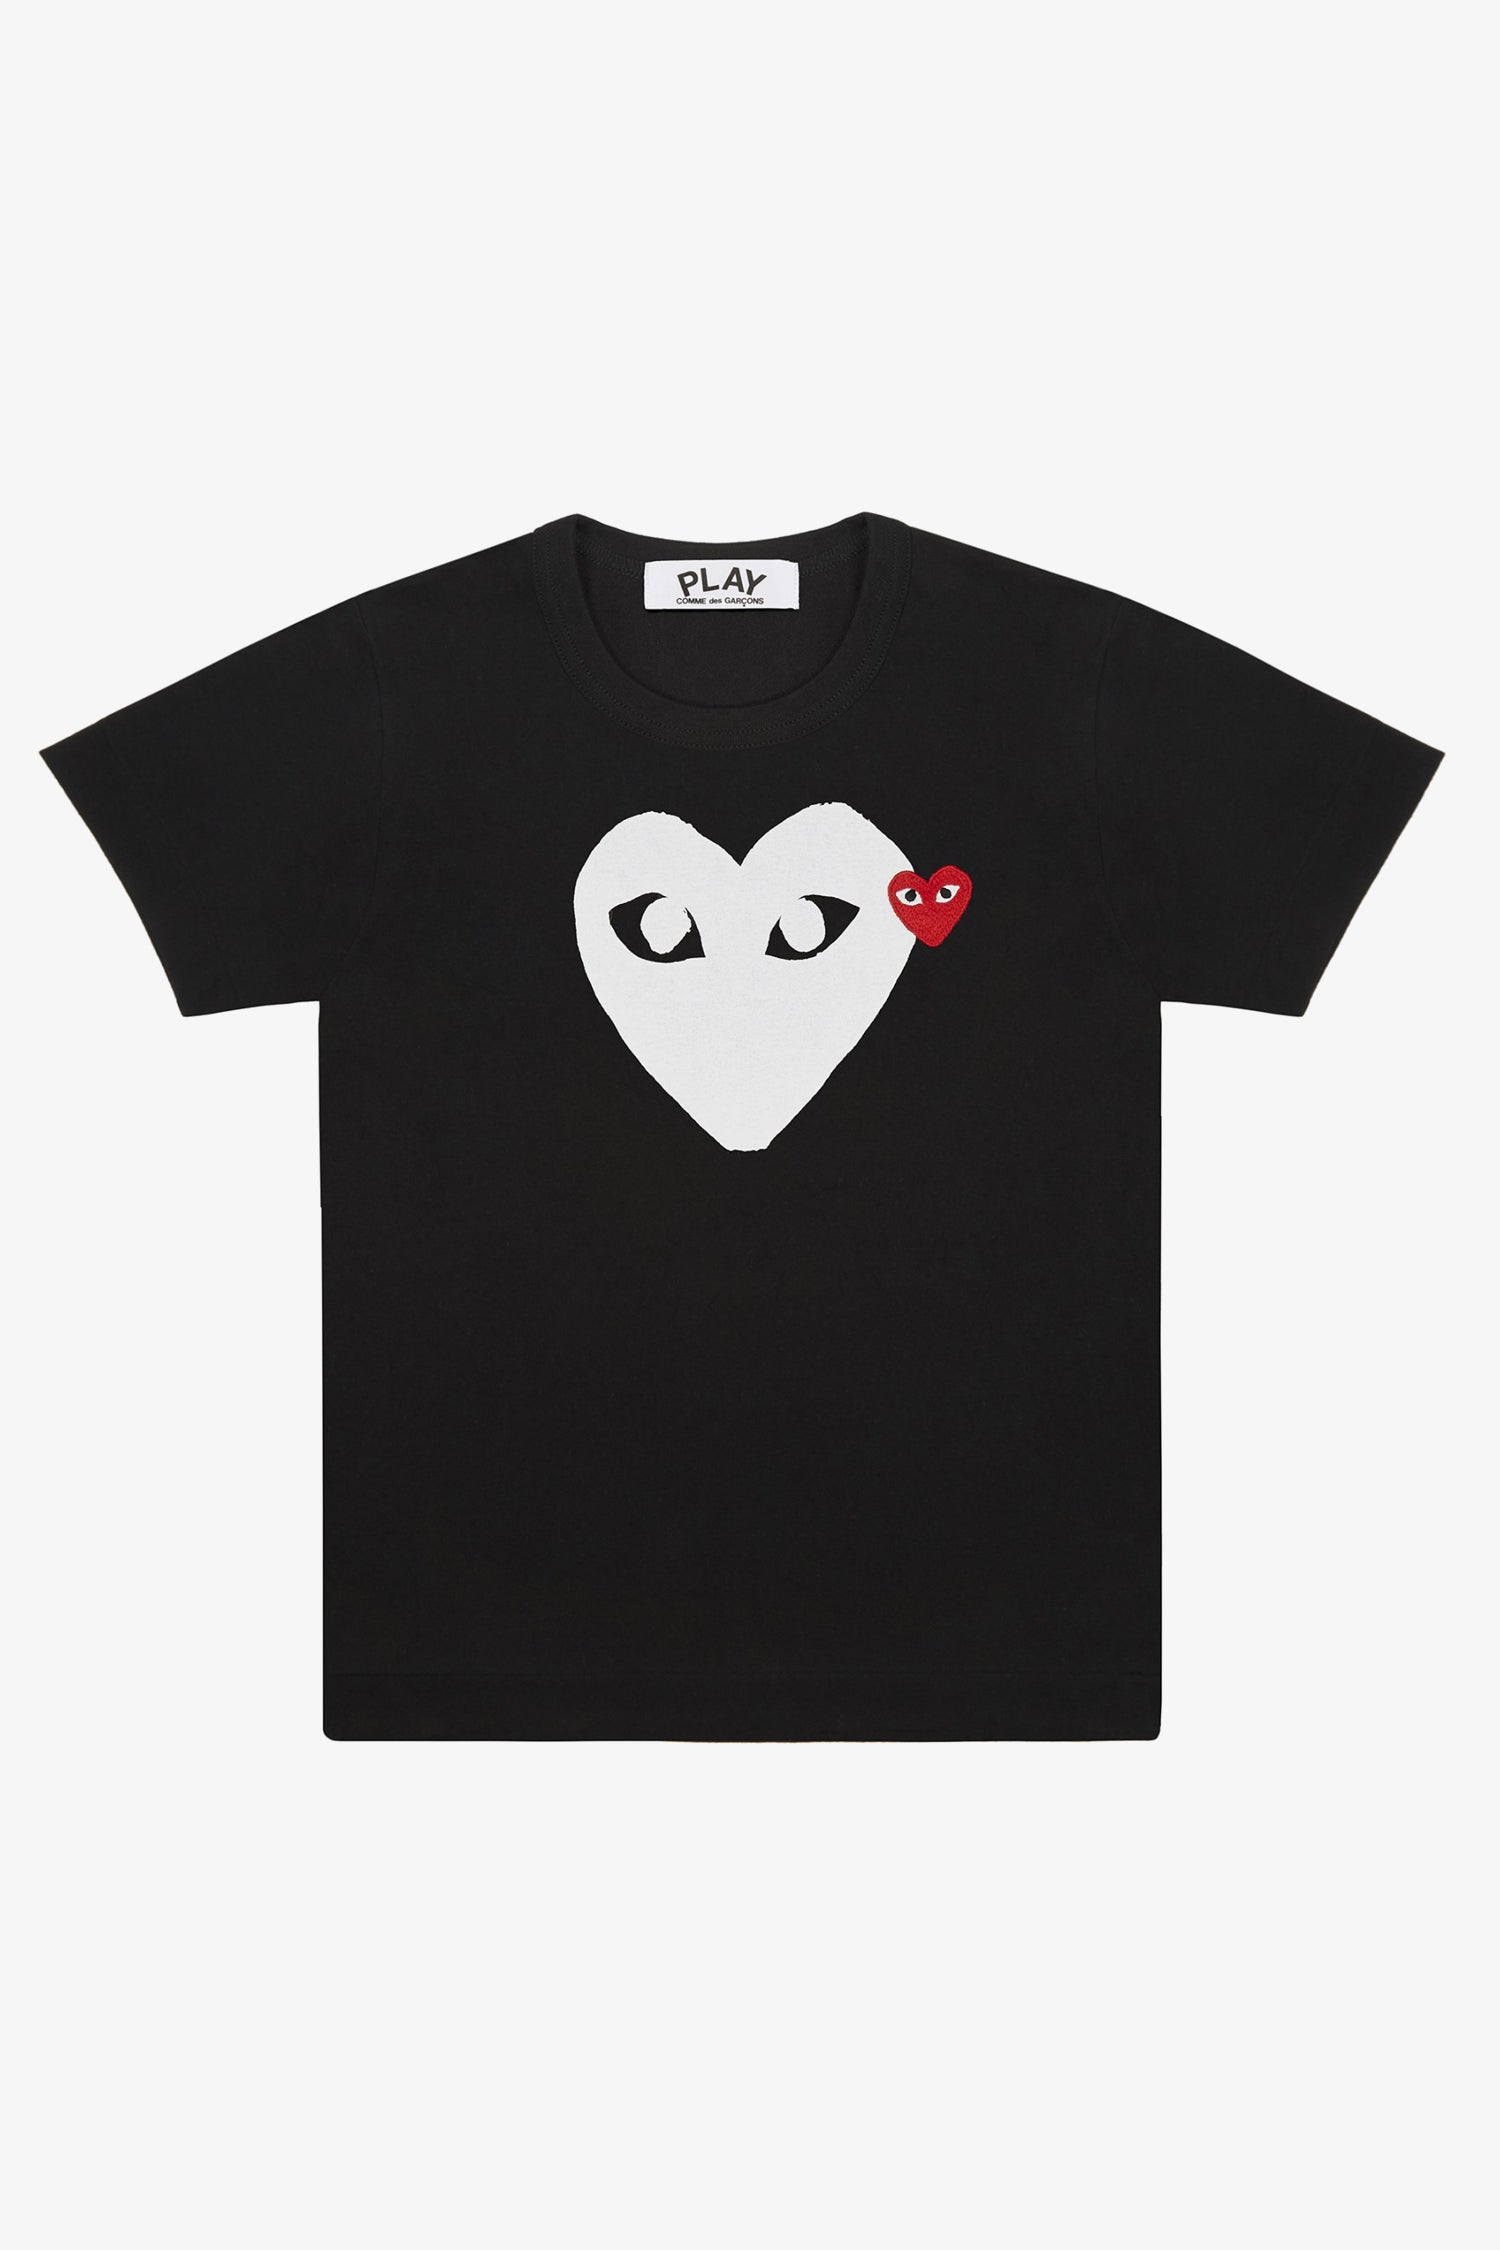 Selectshop FRAME - COMME DES GARCONS PLAY Big White Heart T-Shirt T-Shirt Dubai